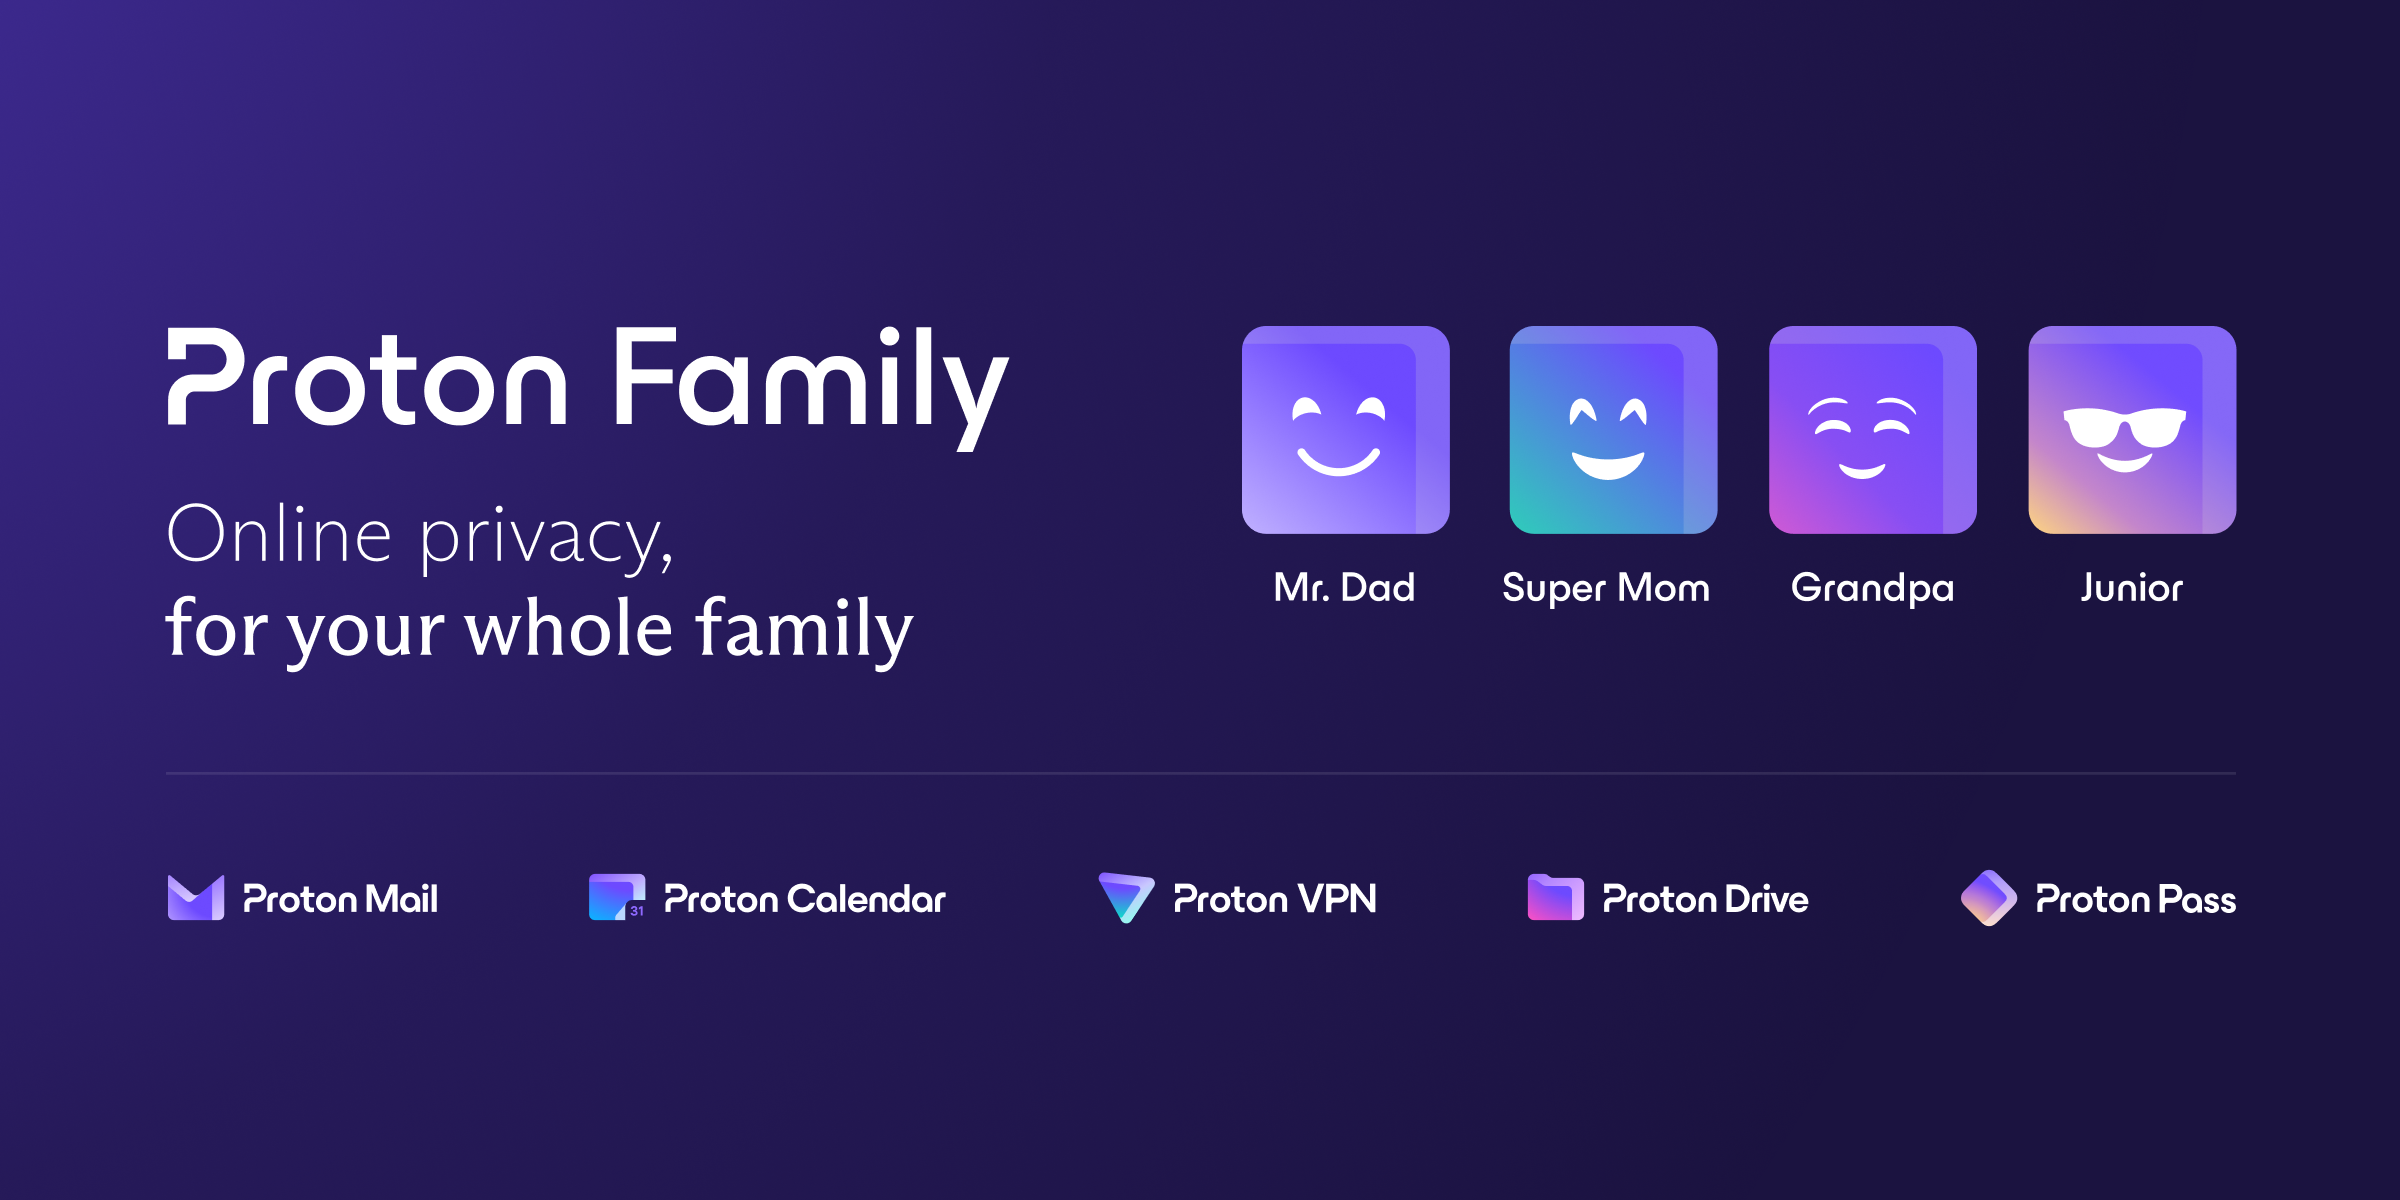 Proton family plan